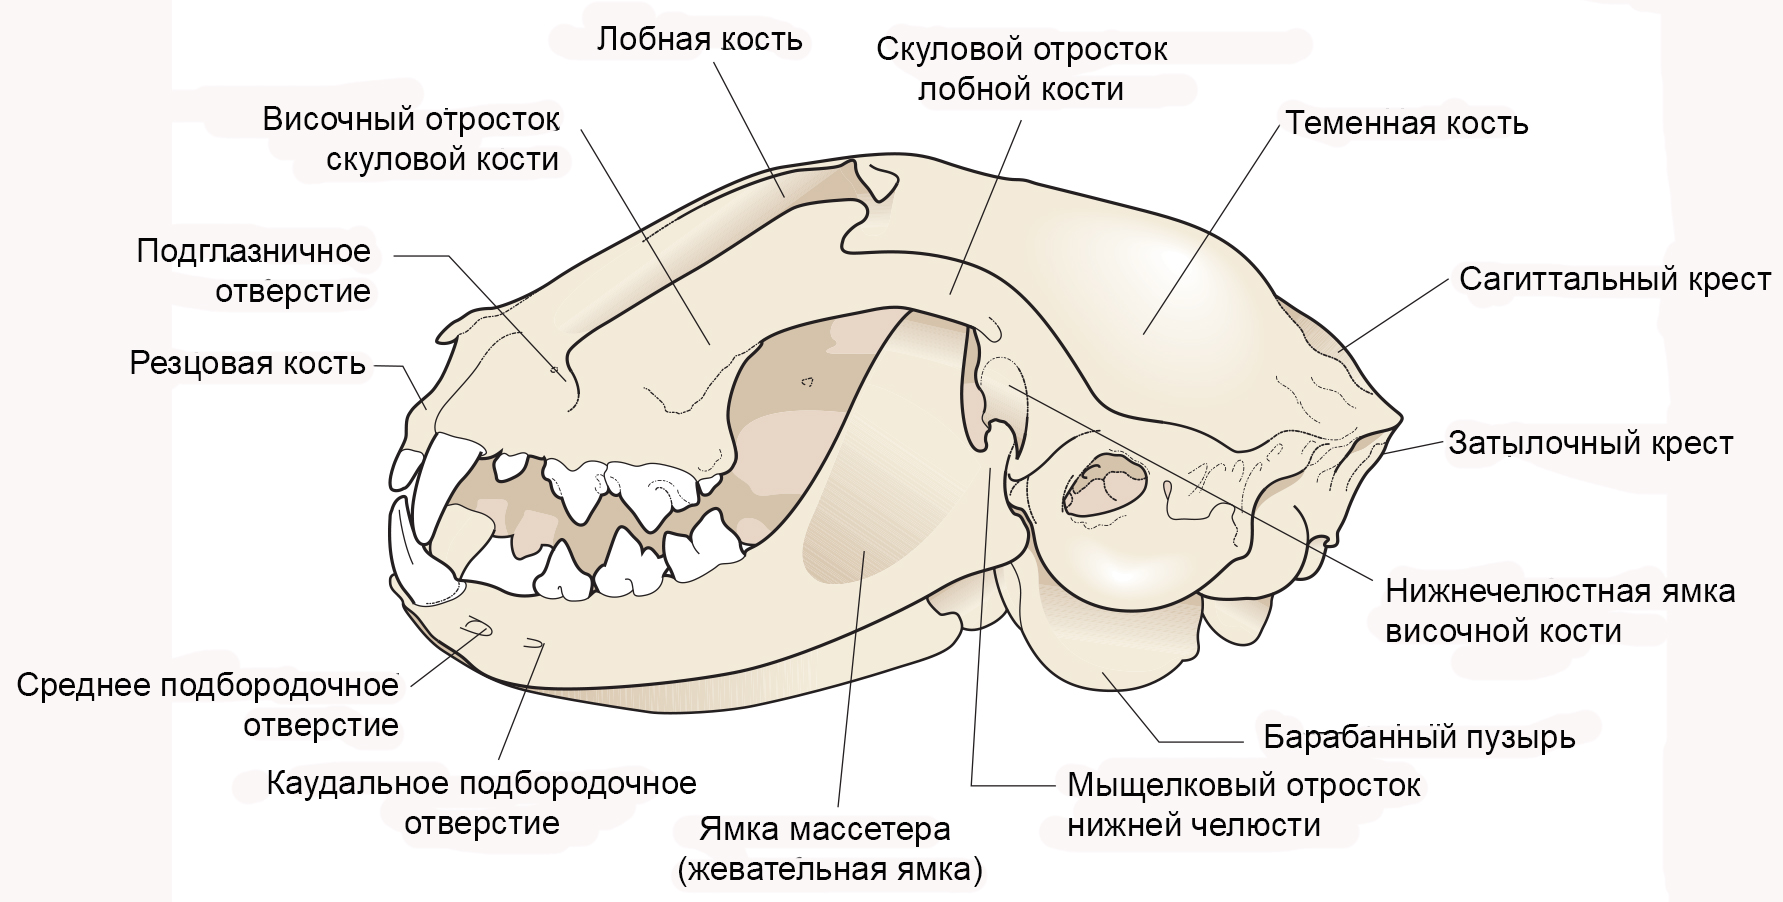 челюсть кошки анатомия